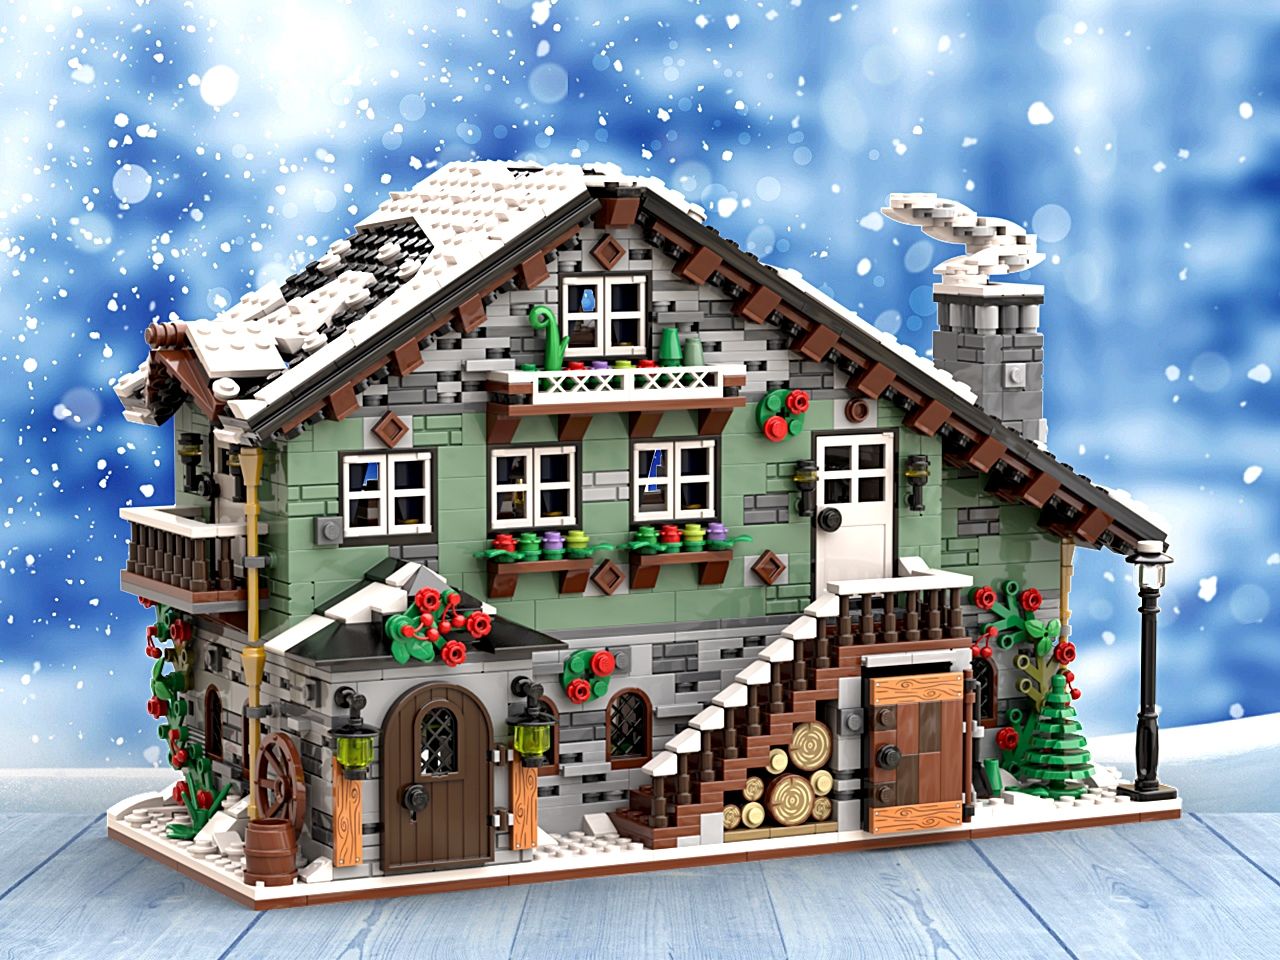 LEGO Bricklink 910004 Winterliche Almhütte